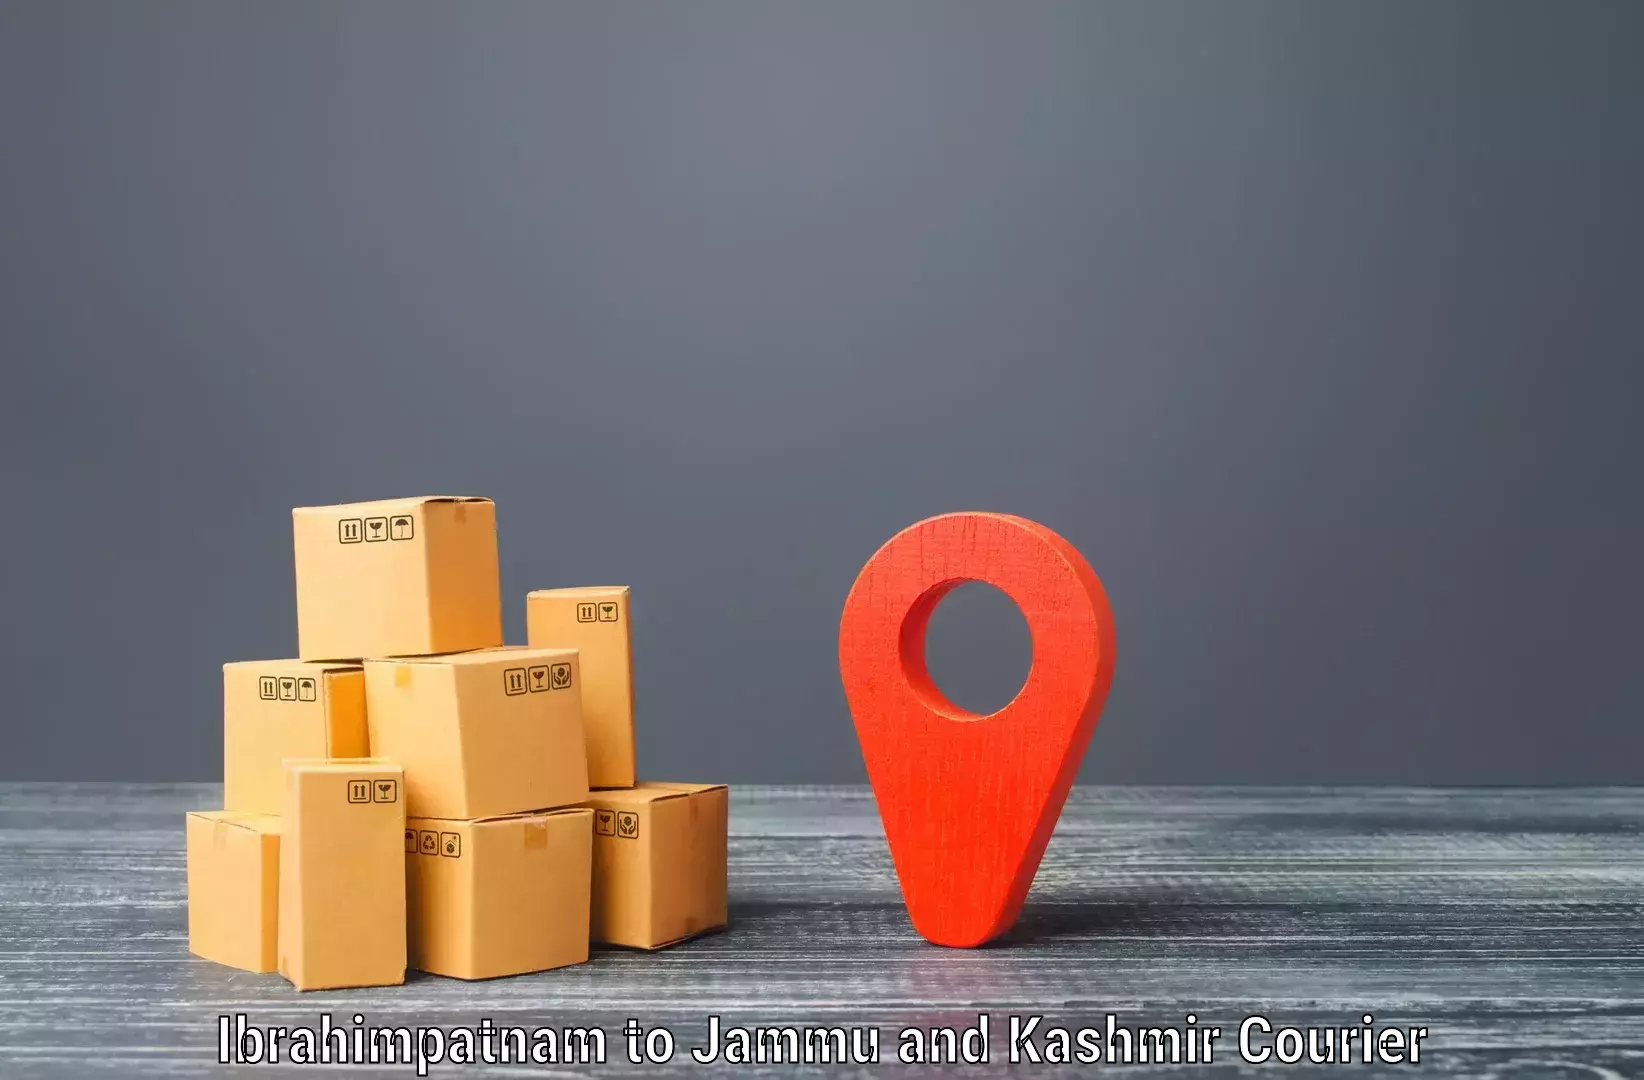 Door-to-door shipment Ibrahimpatnam to Kishtwar